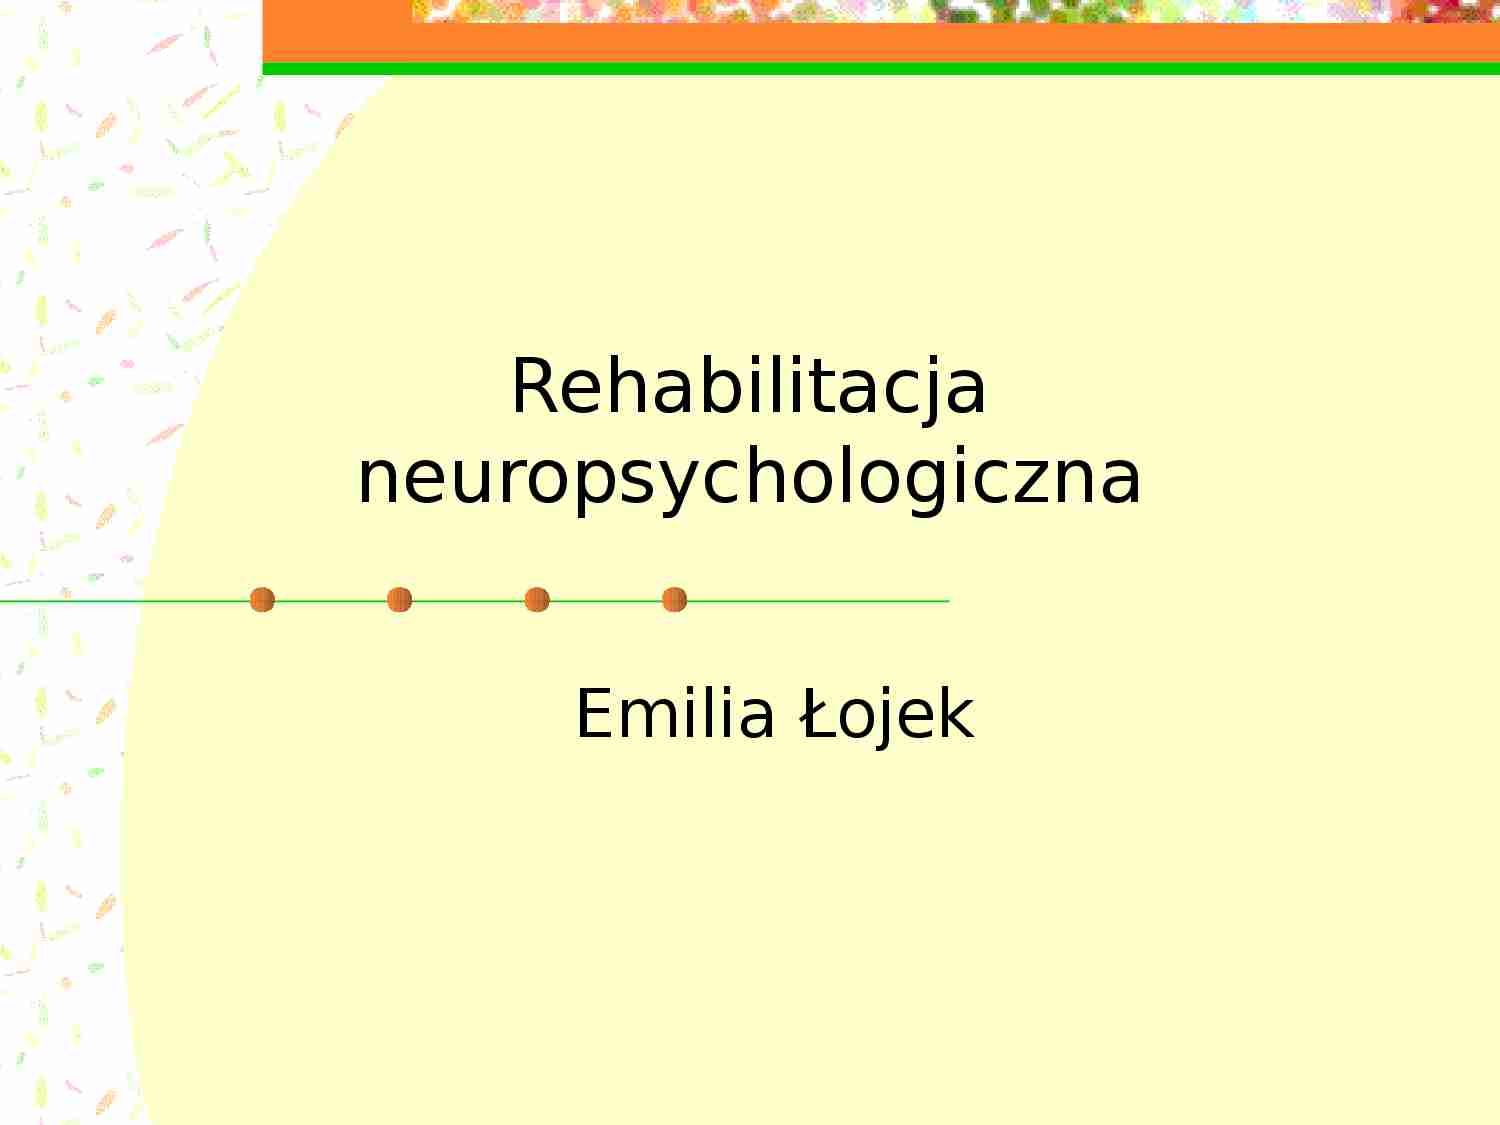 Rehabilitacja neuropsychologiczna - prezentacja. - strona 1